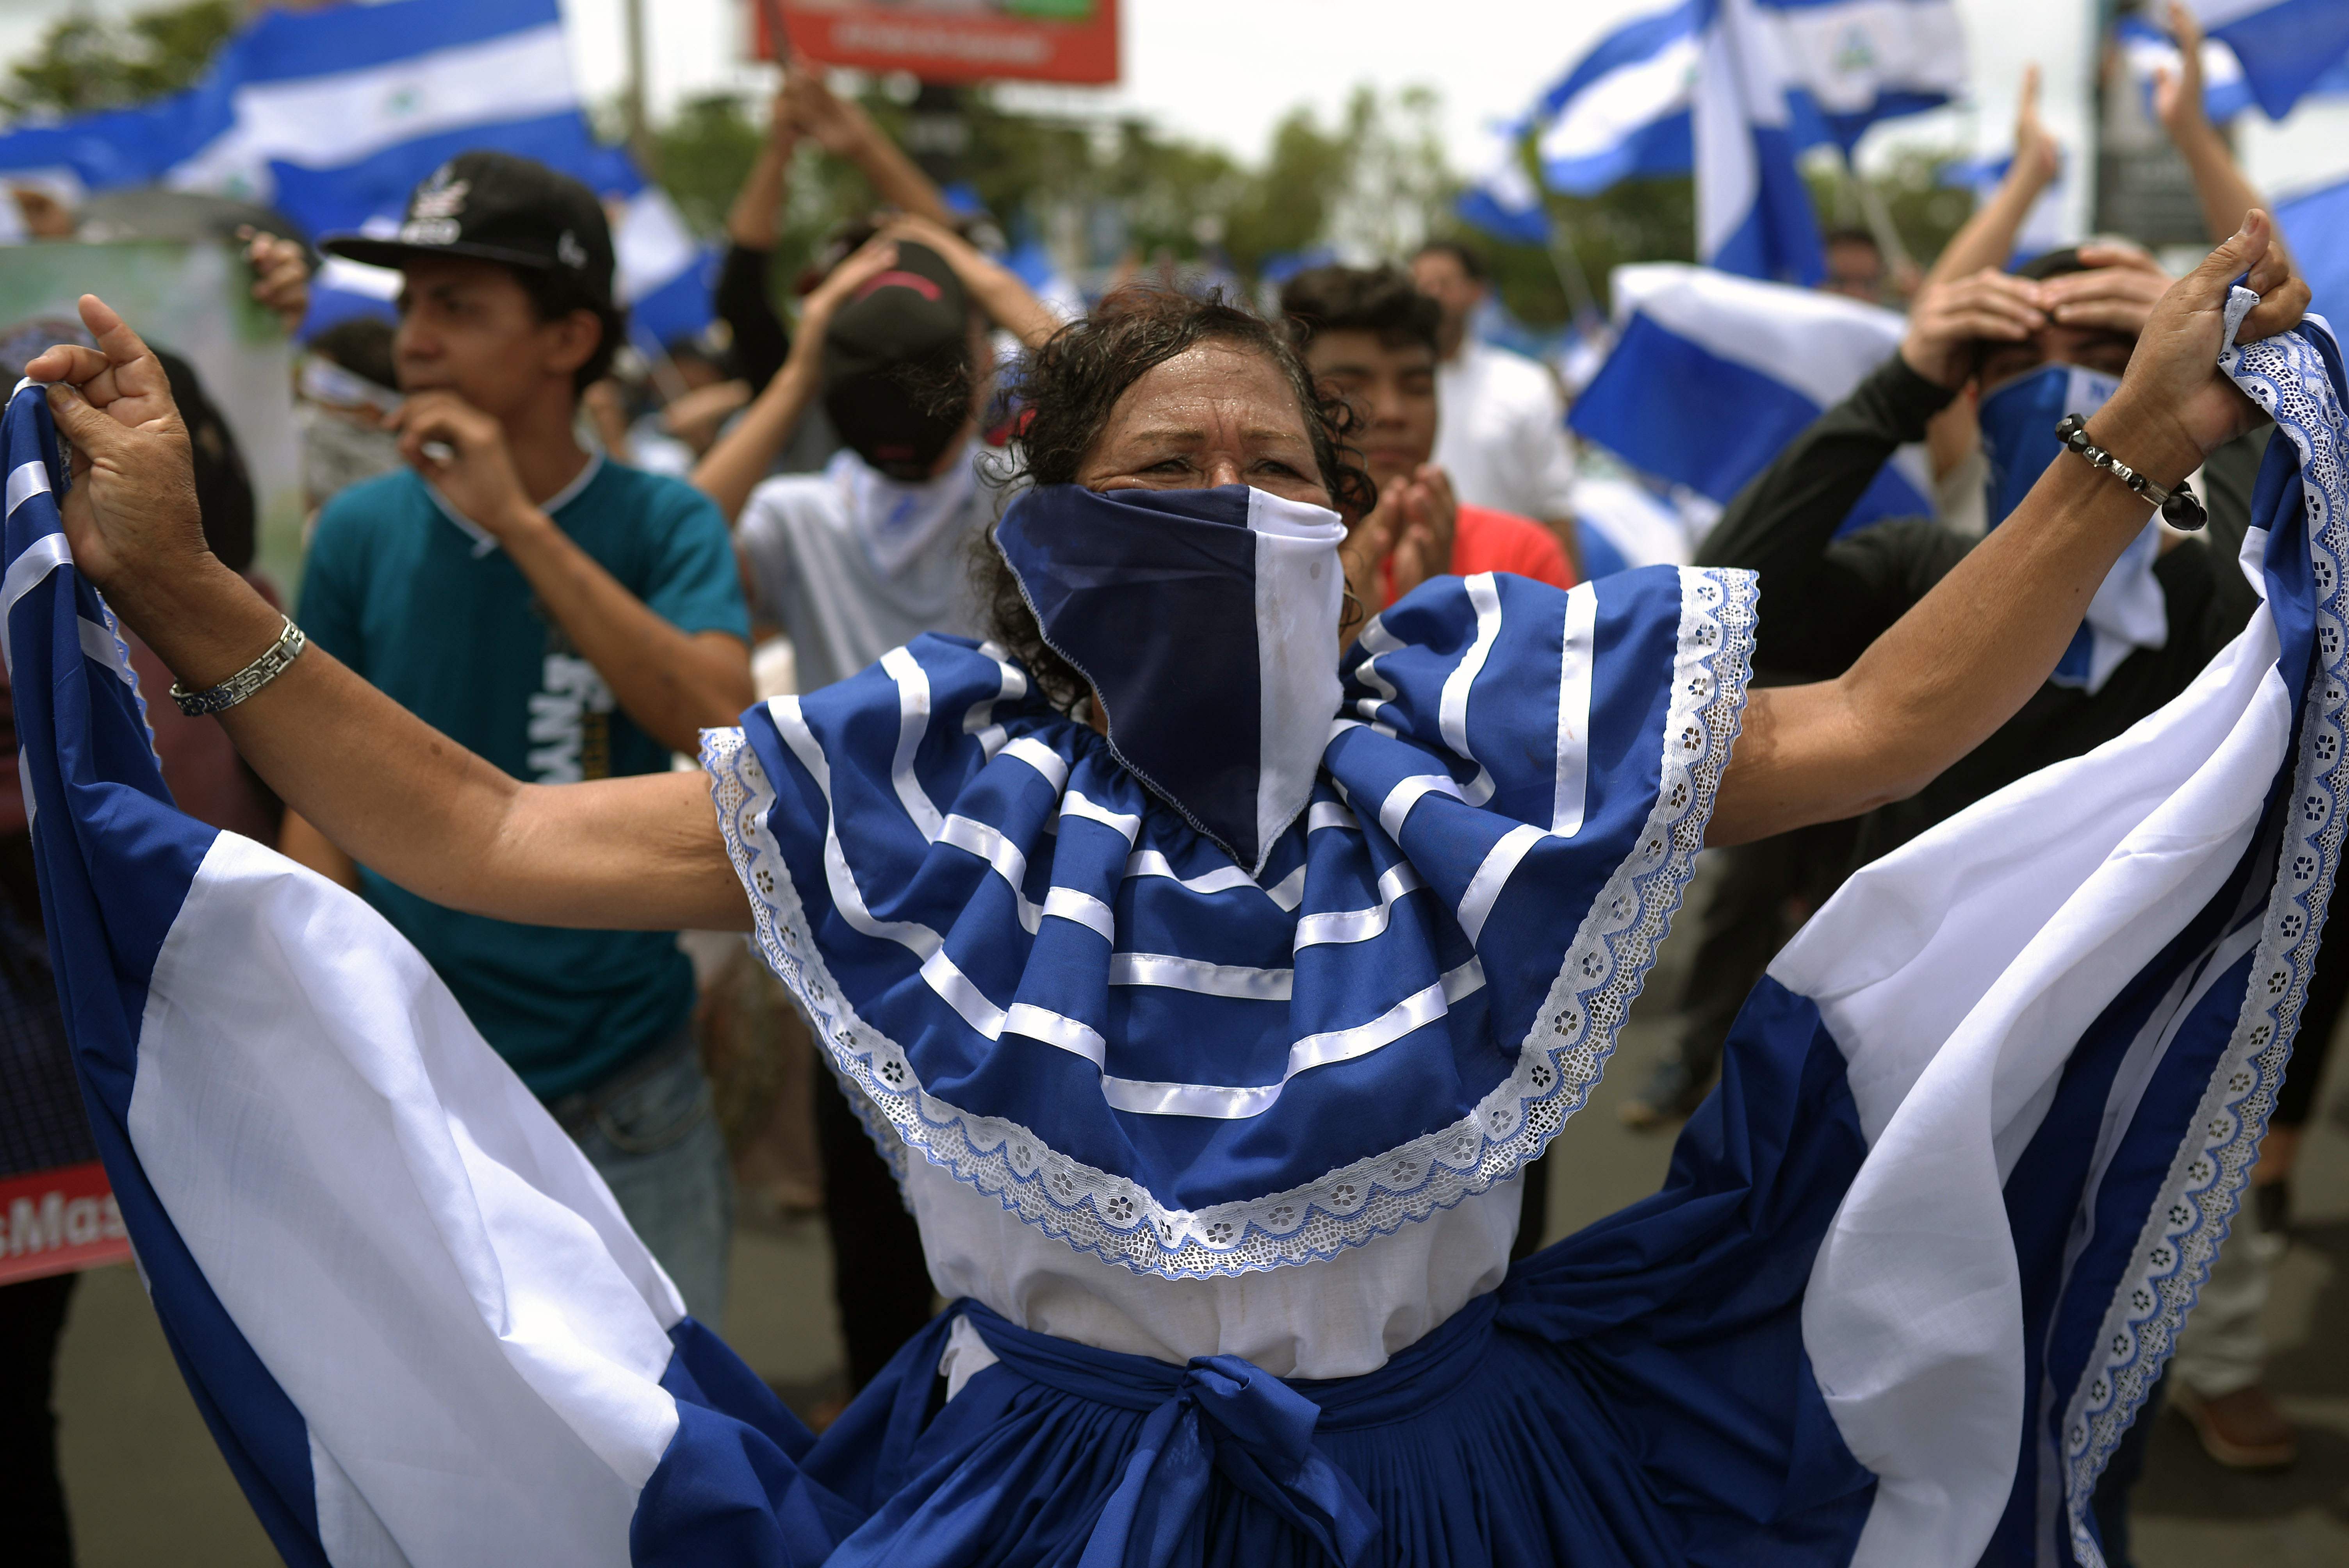 Никарагуа траур